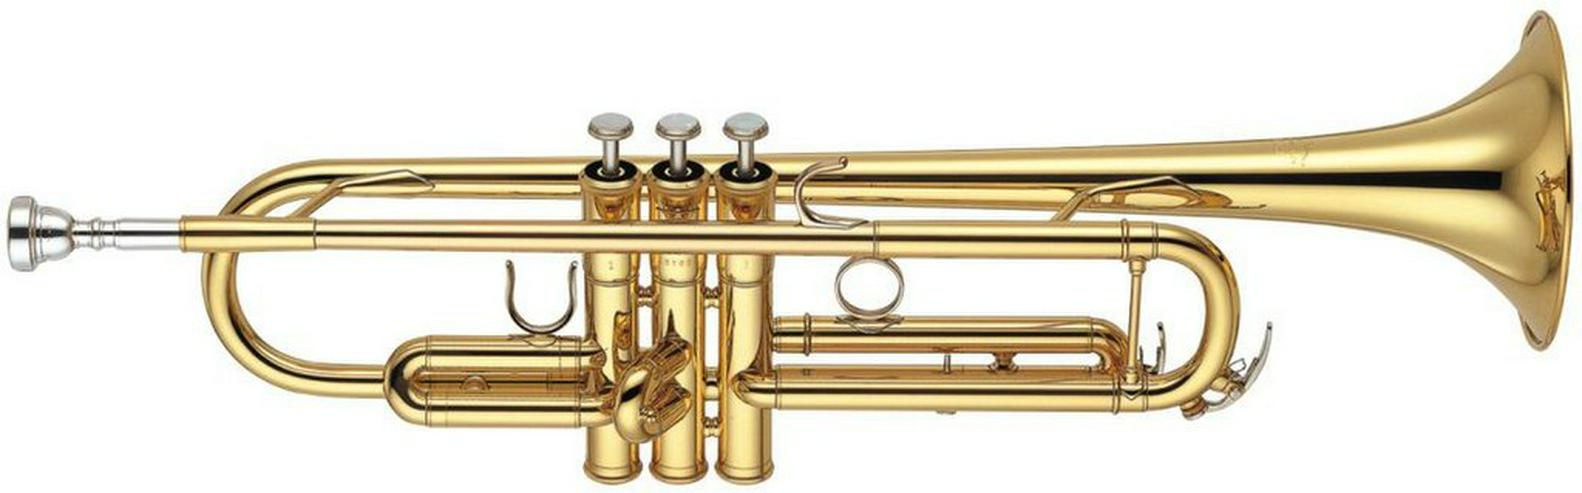 Yamaha B -Trompete YTR 6345 G, Neu - Blasinstrumente - Bild 1